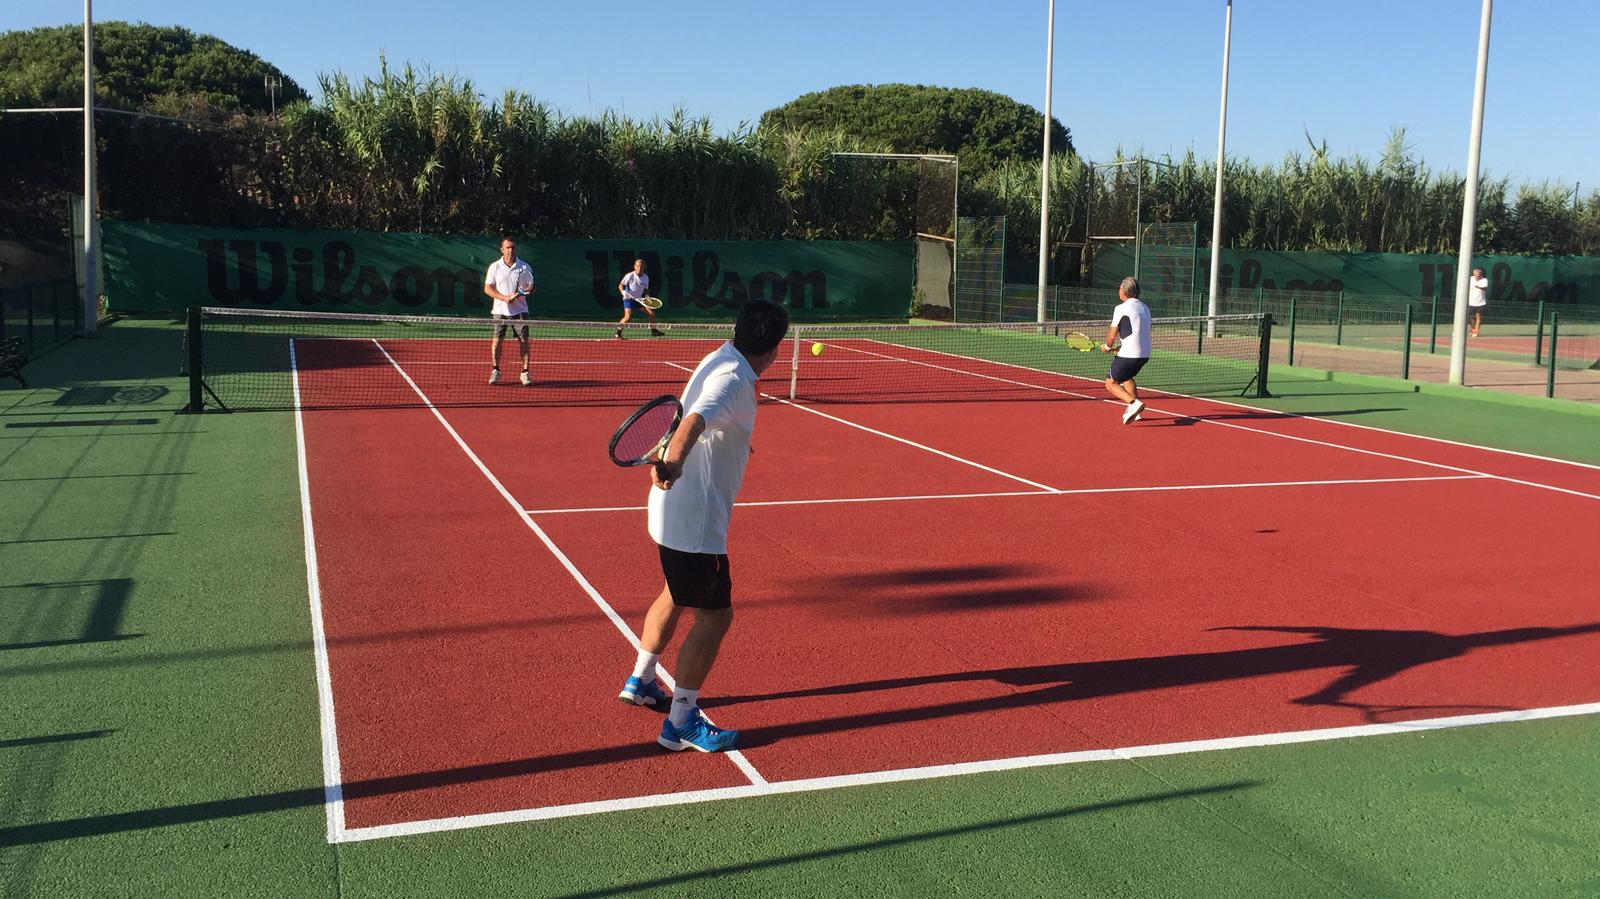 Escuela-de-tenis-y-padel-Club-La-Barrosa Chiclana de la Frontera, Novo Sancti Petri Cádiz.